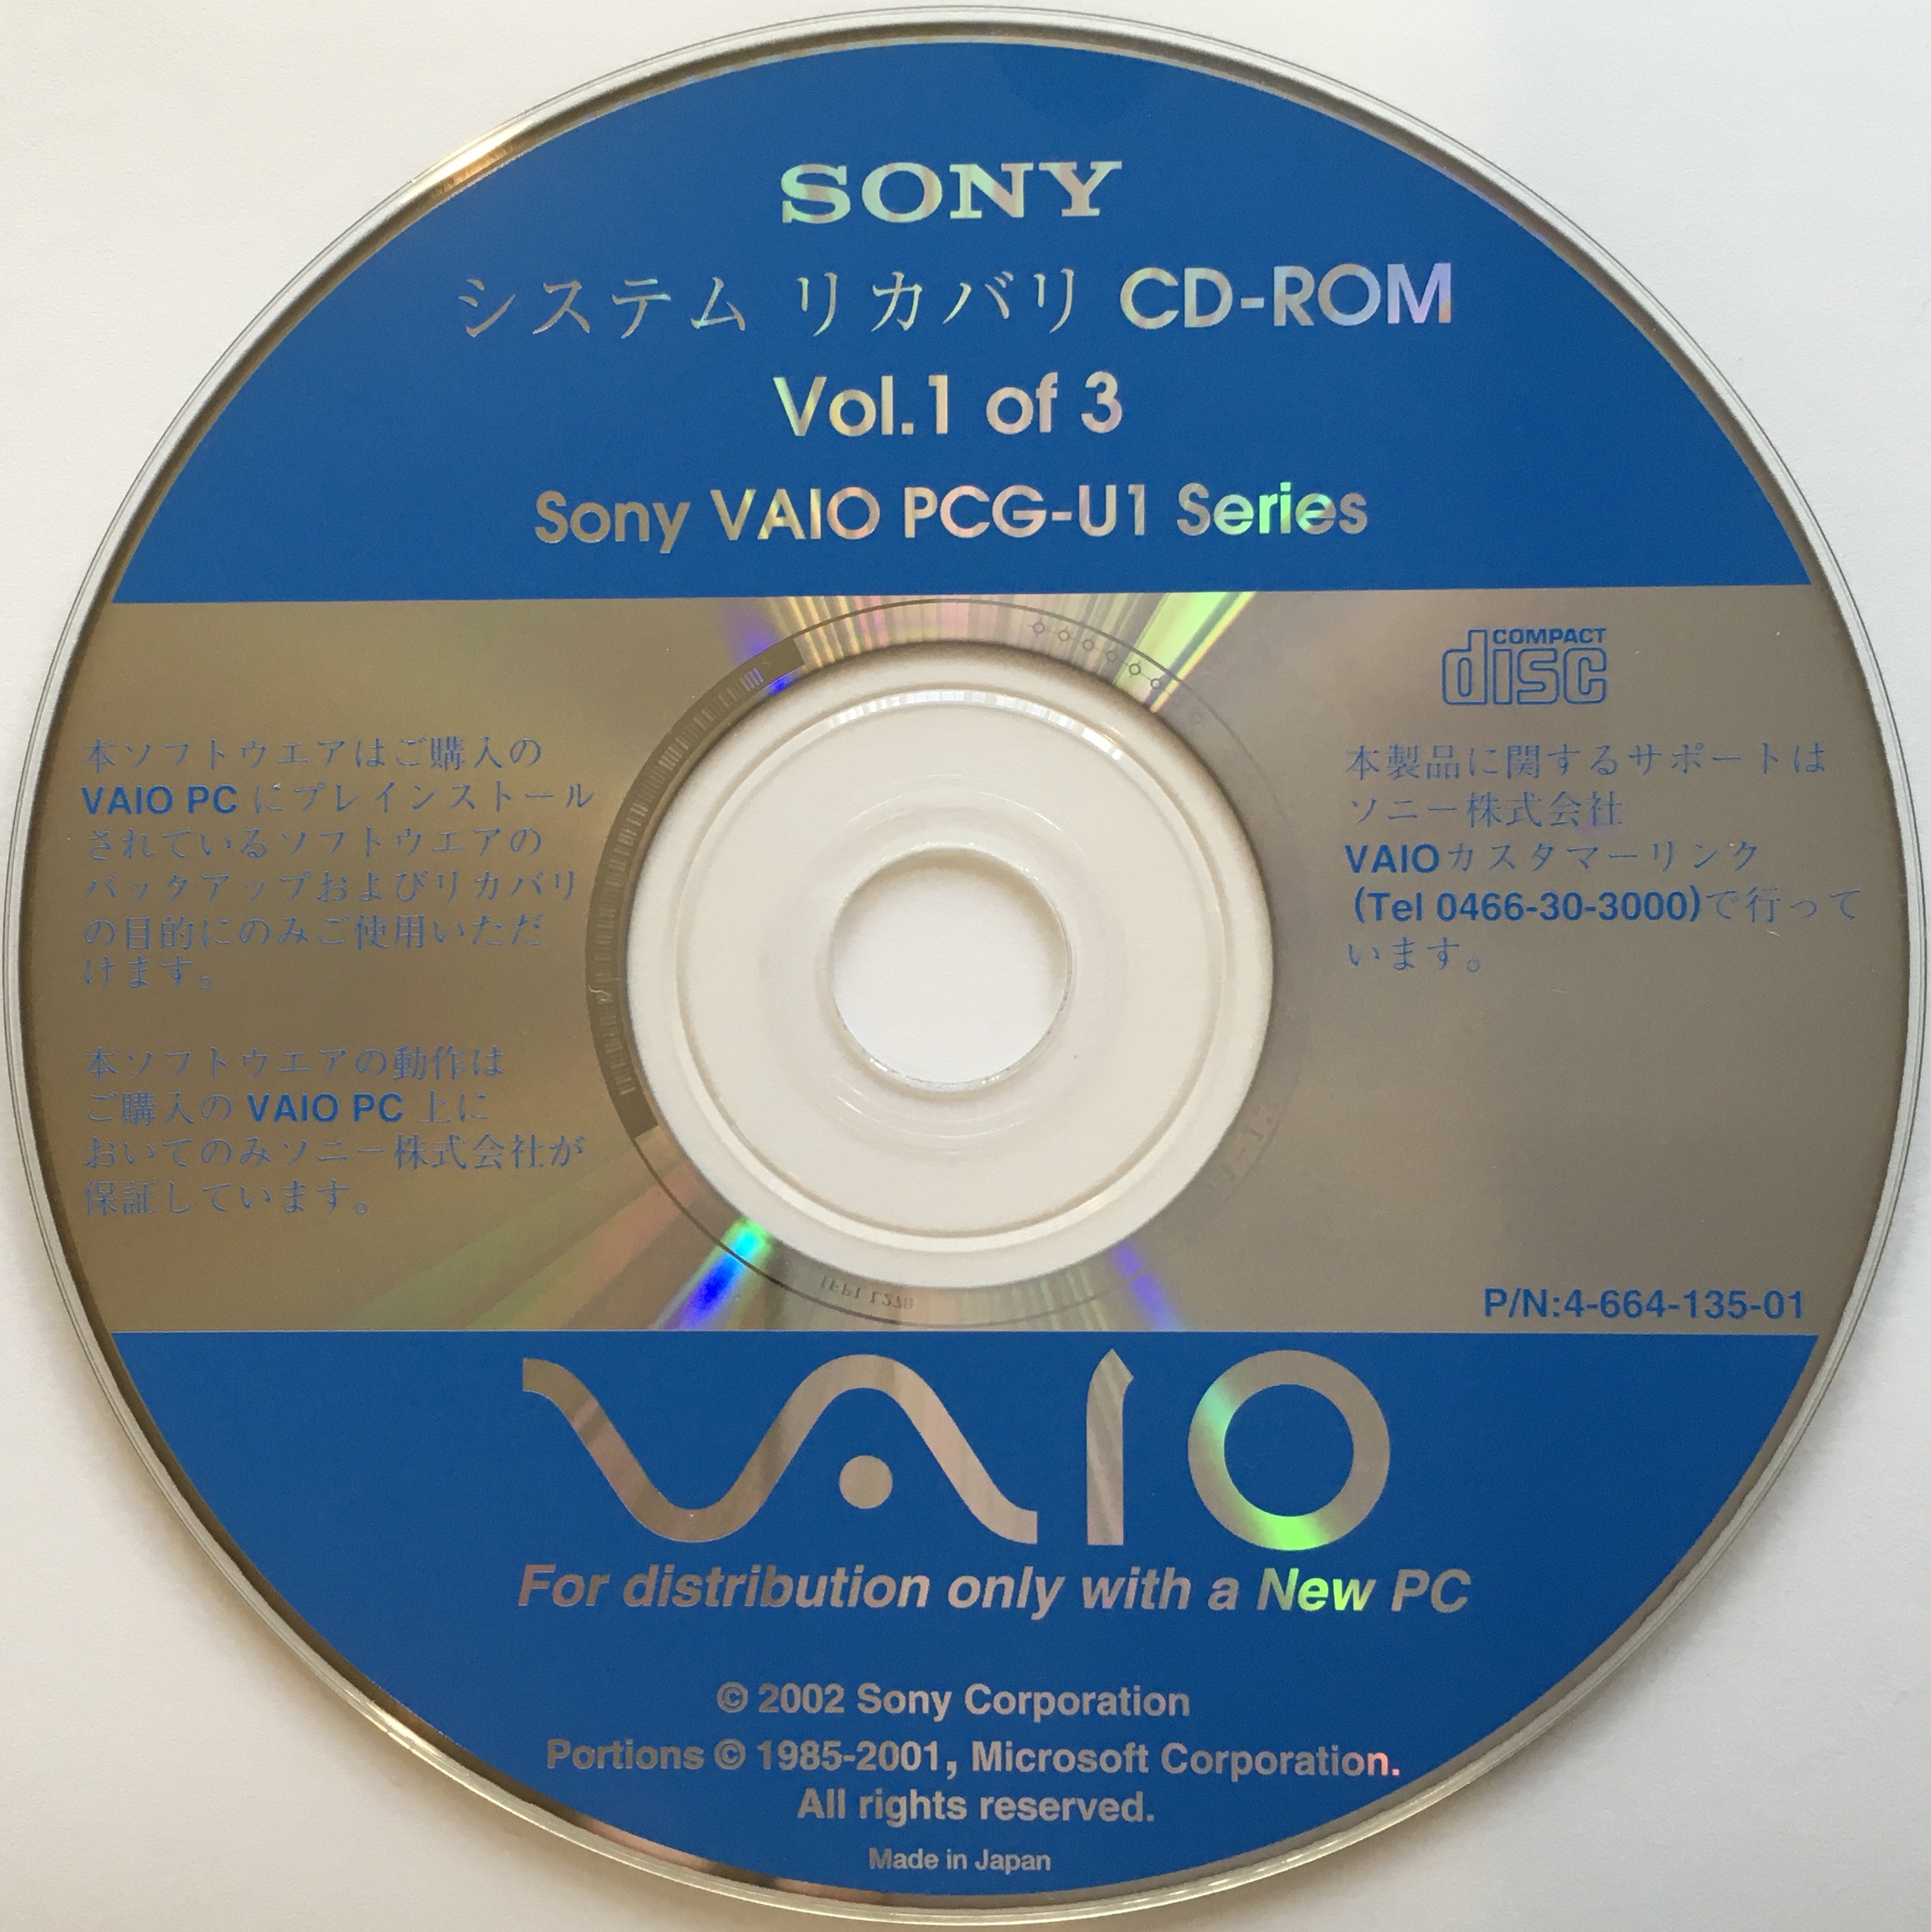 vaio 소프트웨어 프로그램 복구 디스크 다운로드